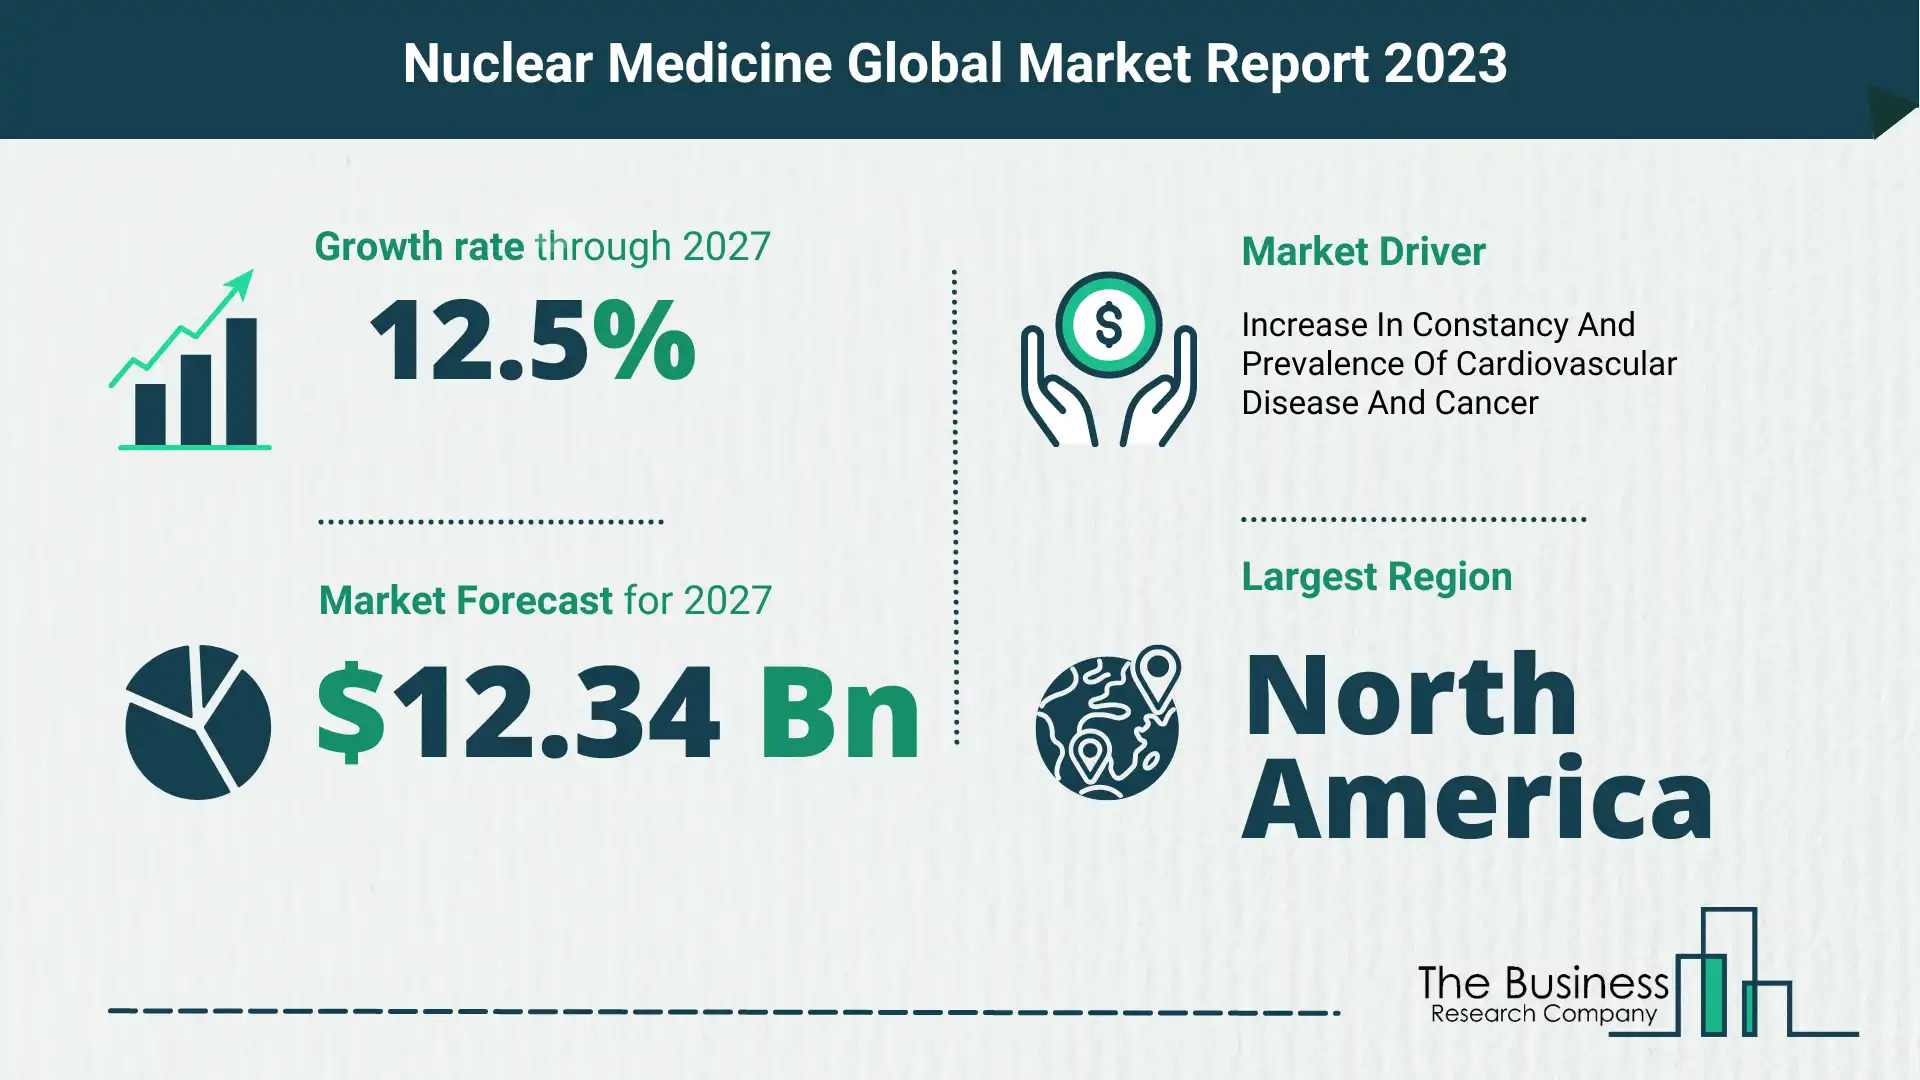 nuclear medicine market